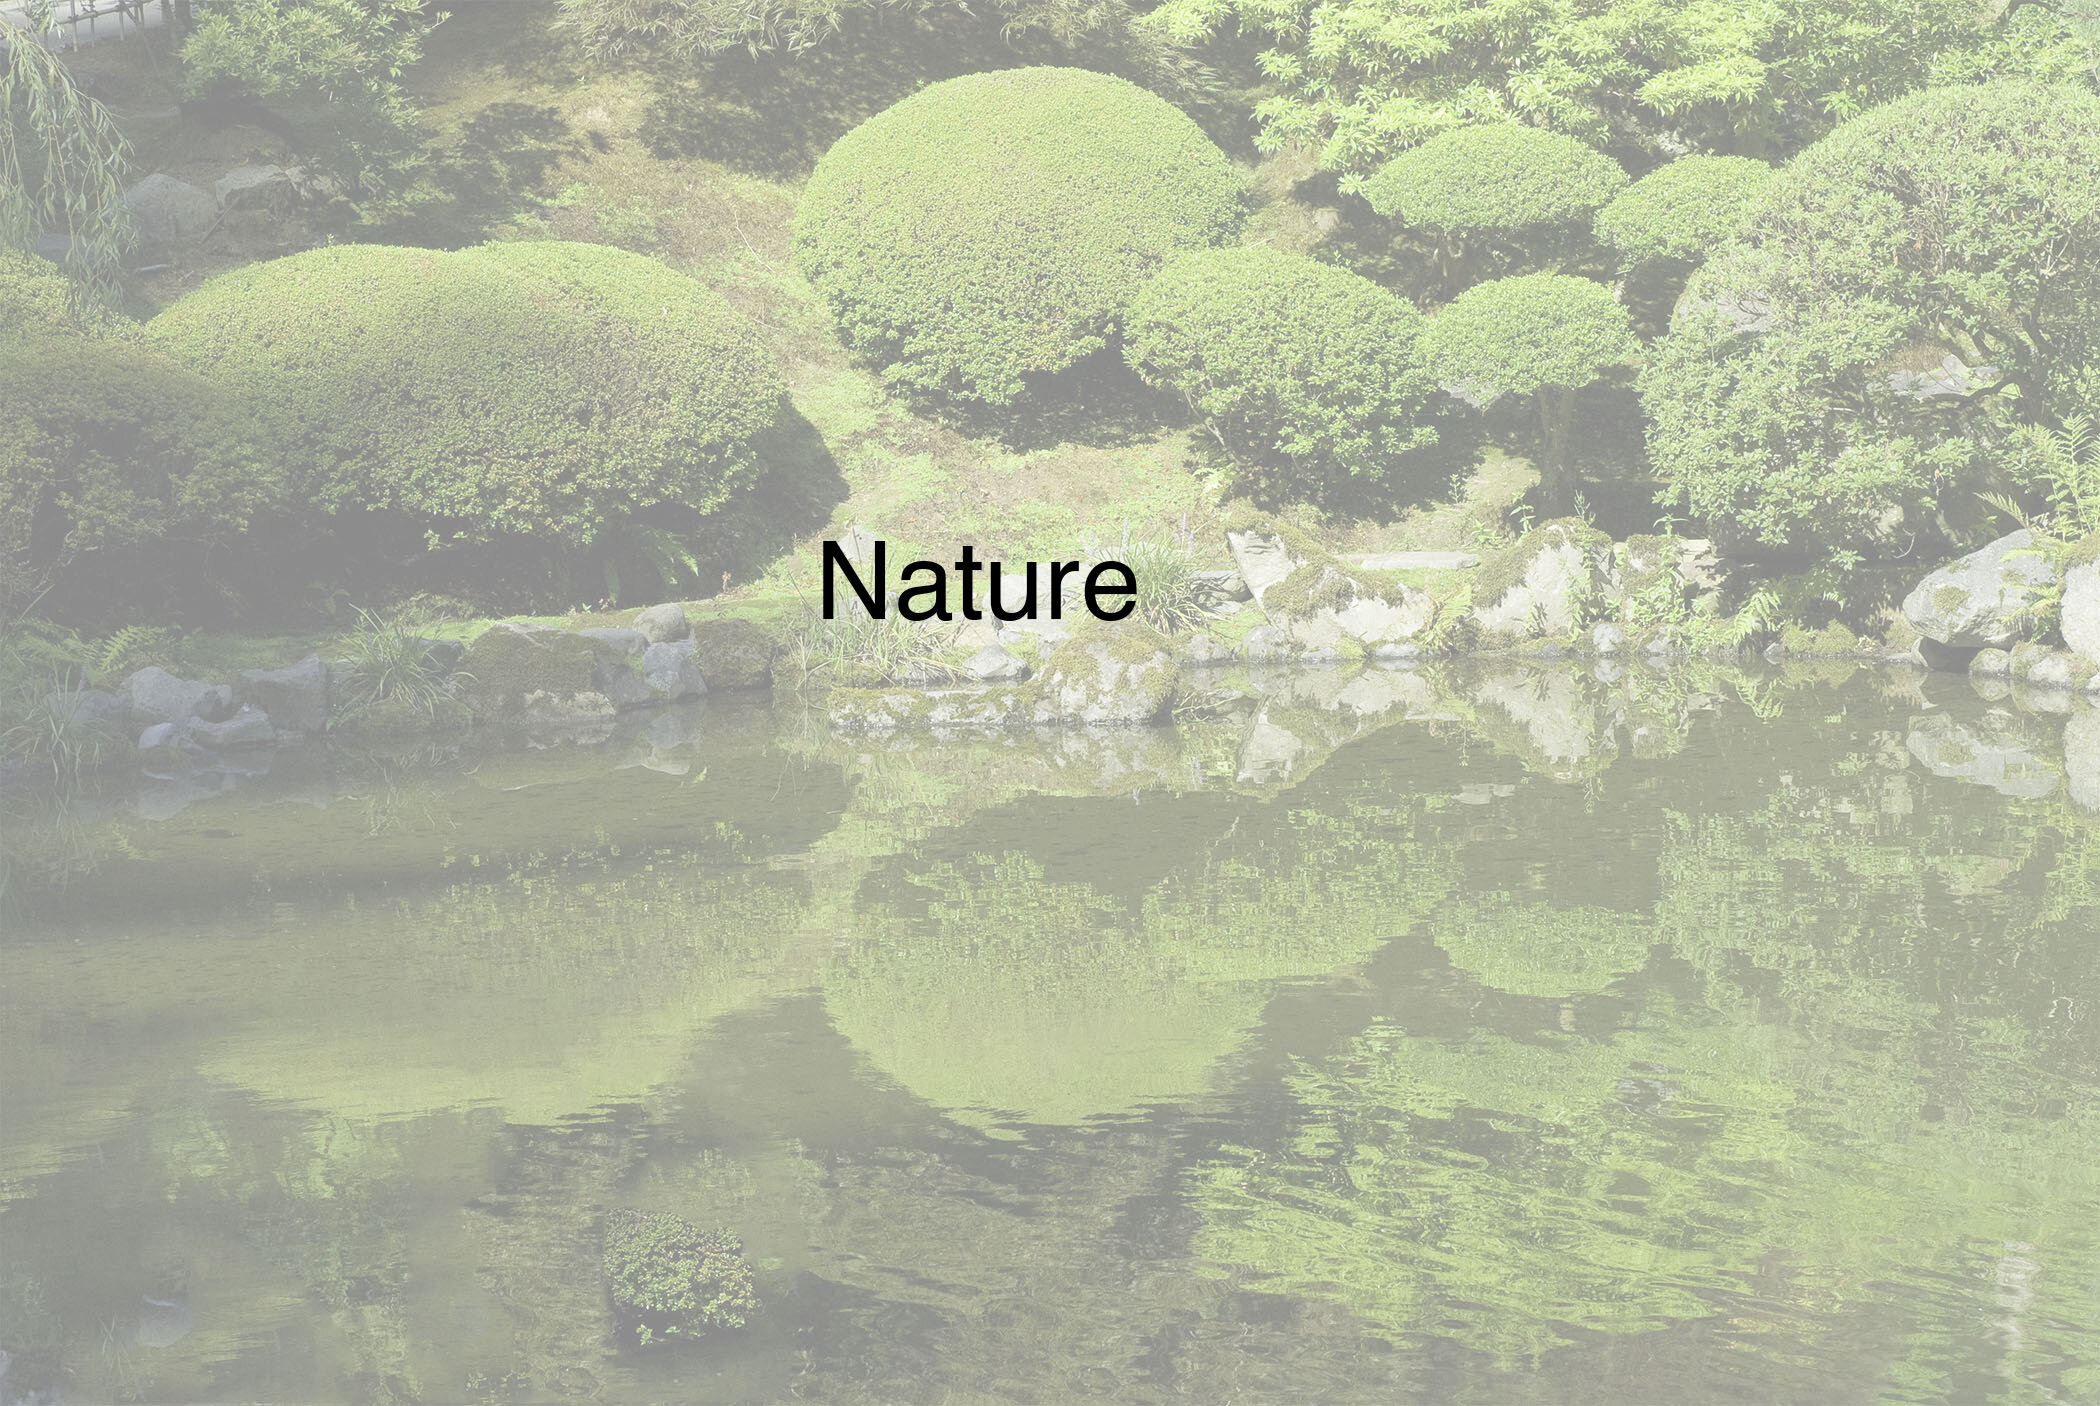 Nature.jpg